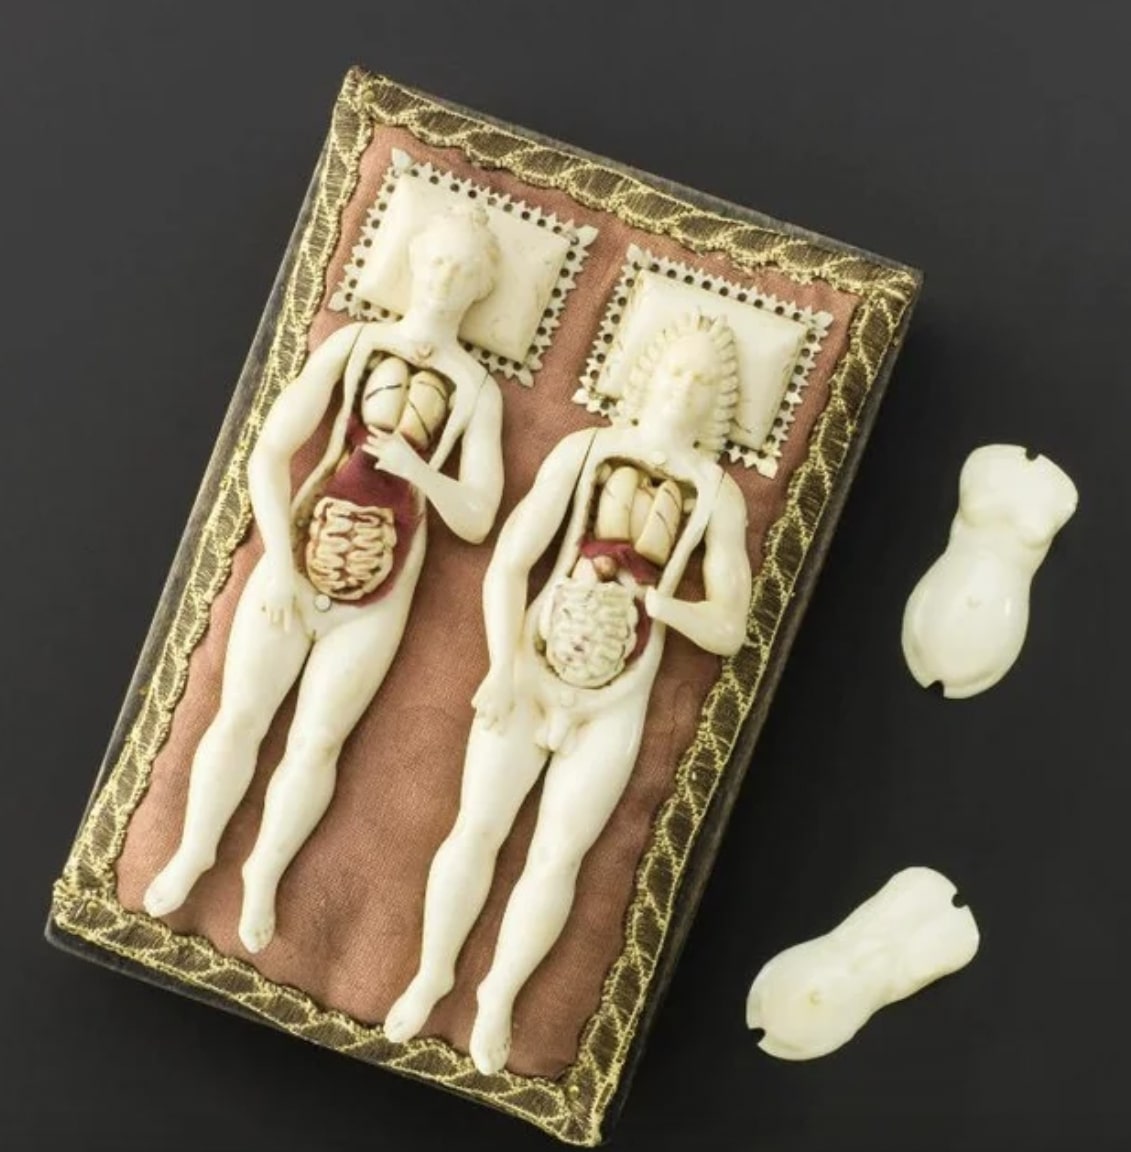 Figuras masculinas e femininas de marfim com órgais - 1600